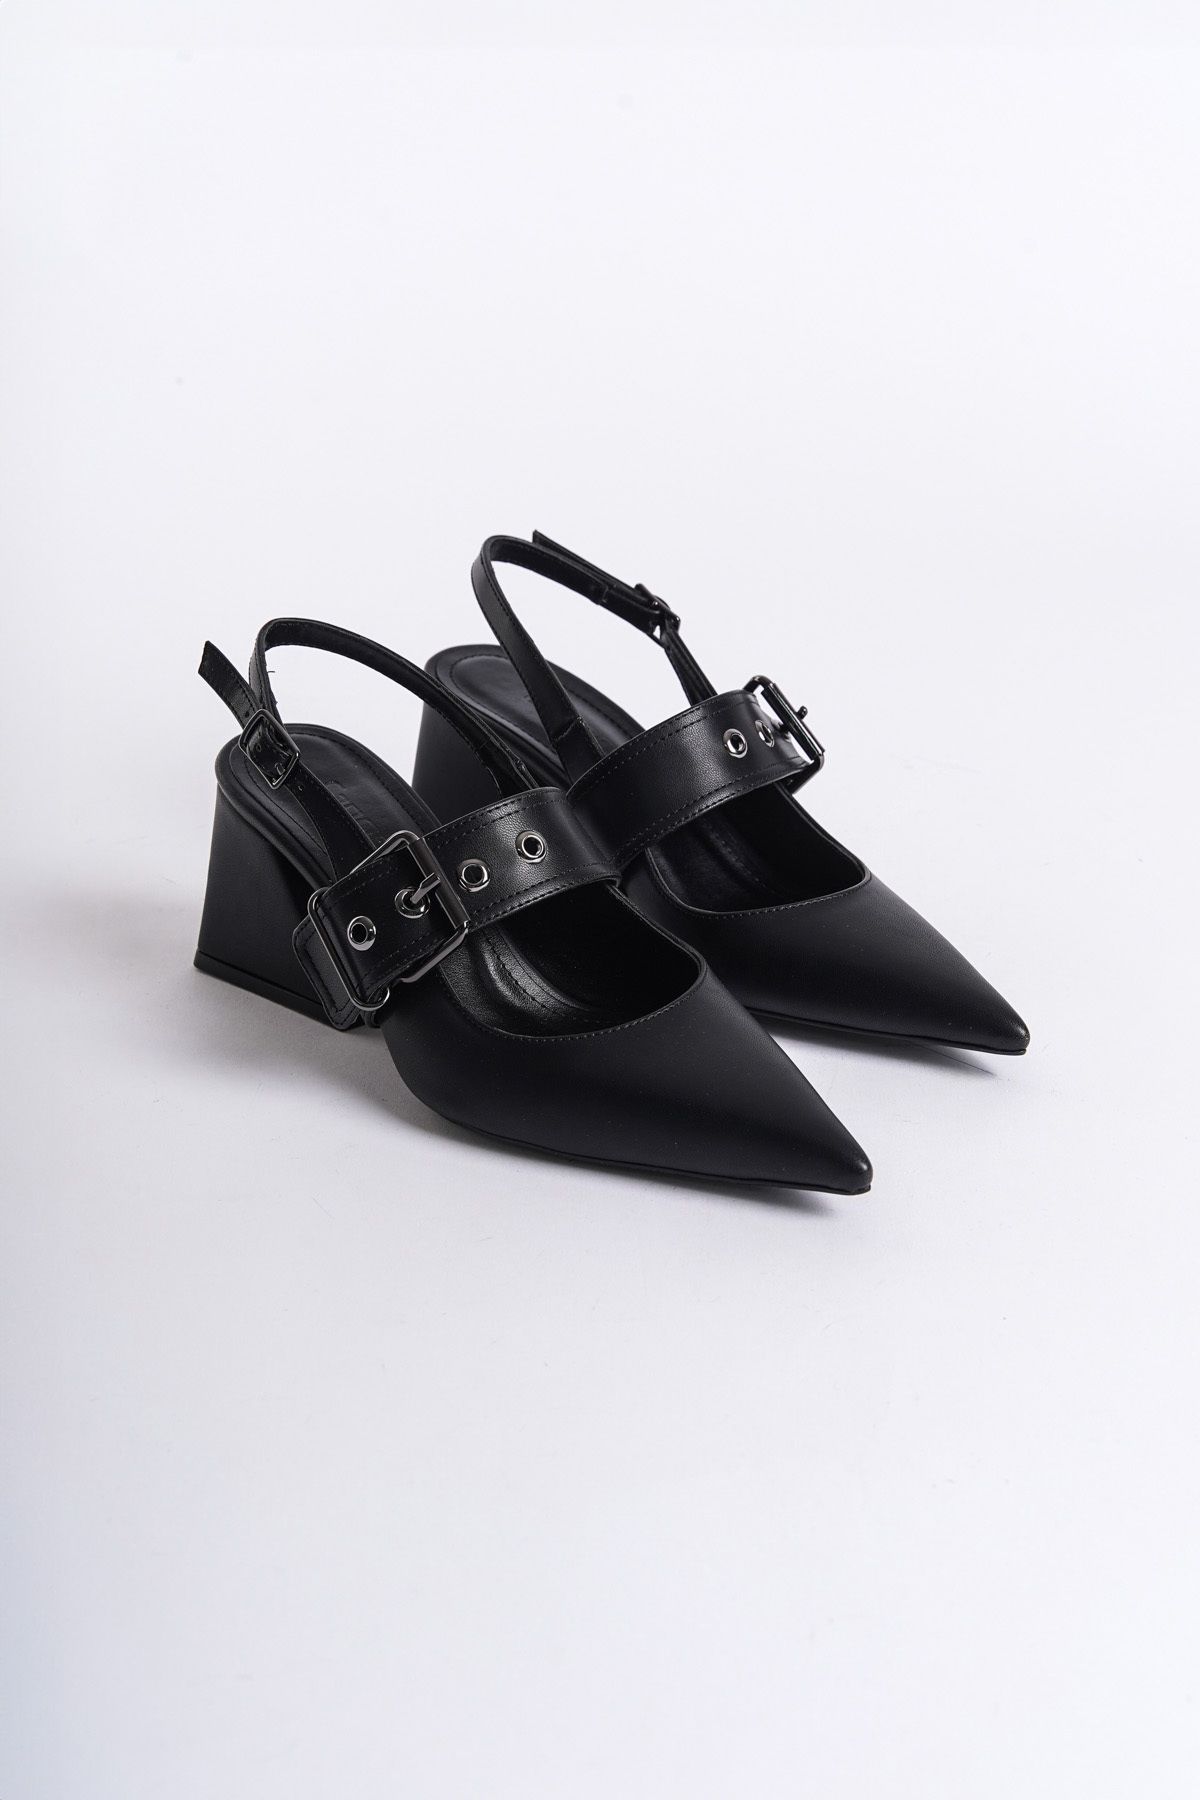 Capone Outfitters Arkası Açık Bantlı Toka Detaylı Kalın Topuklu Kadın Ayakkabı